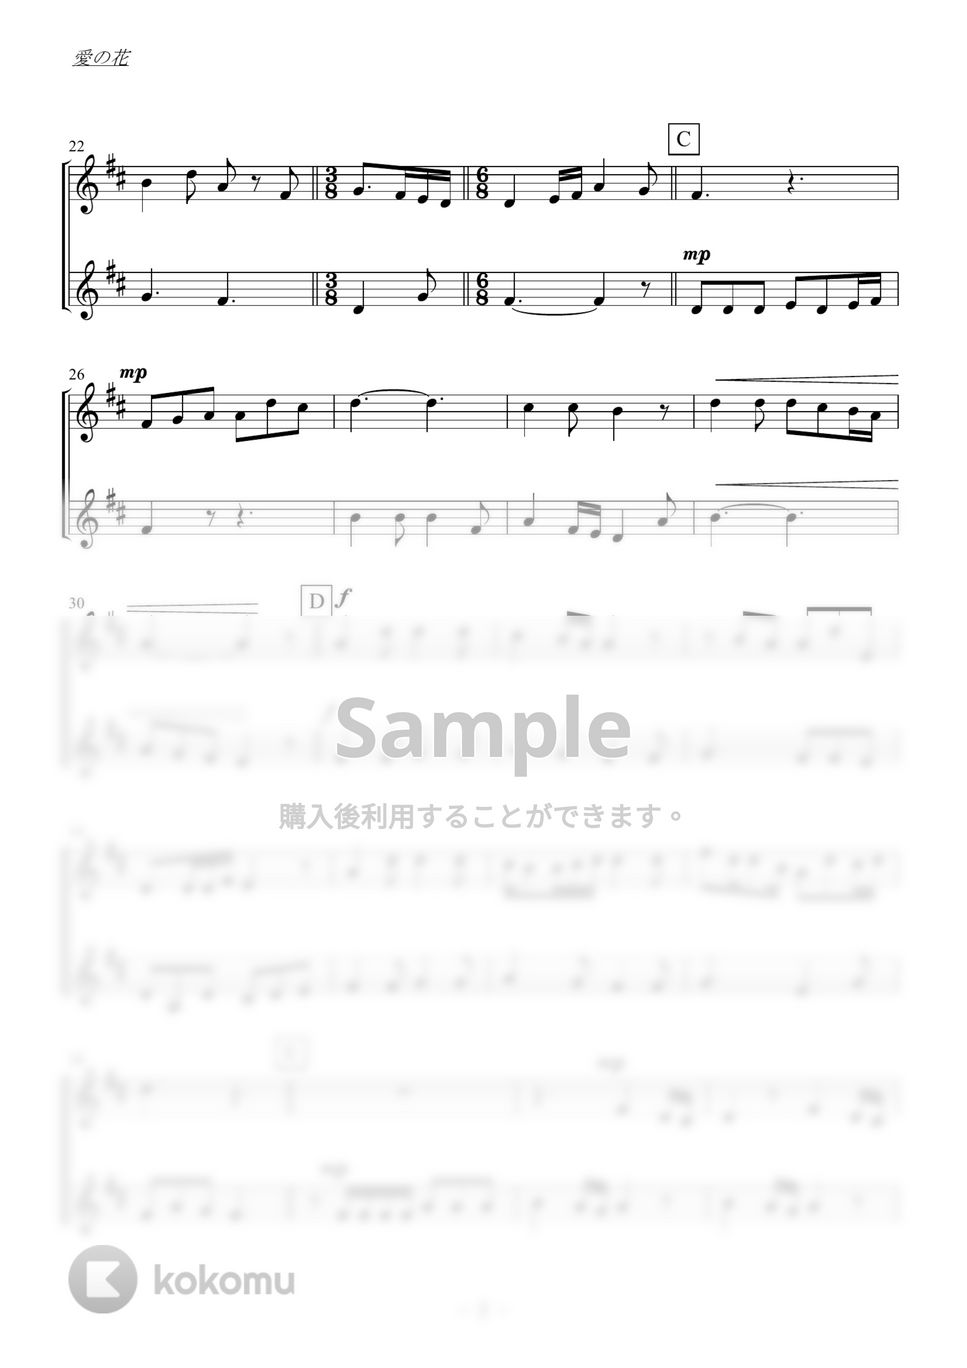 あいみょん - 愛の花 (クラリネットorトランペット二重奏／無伴奏) by kiminabe